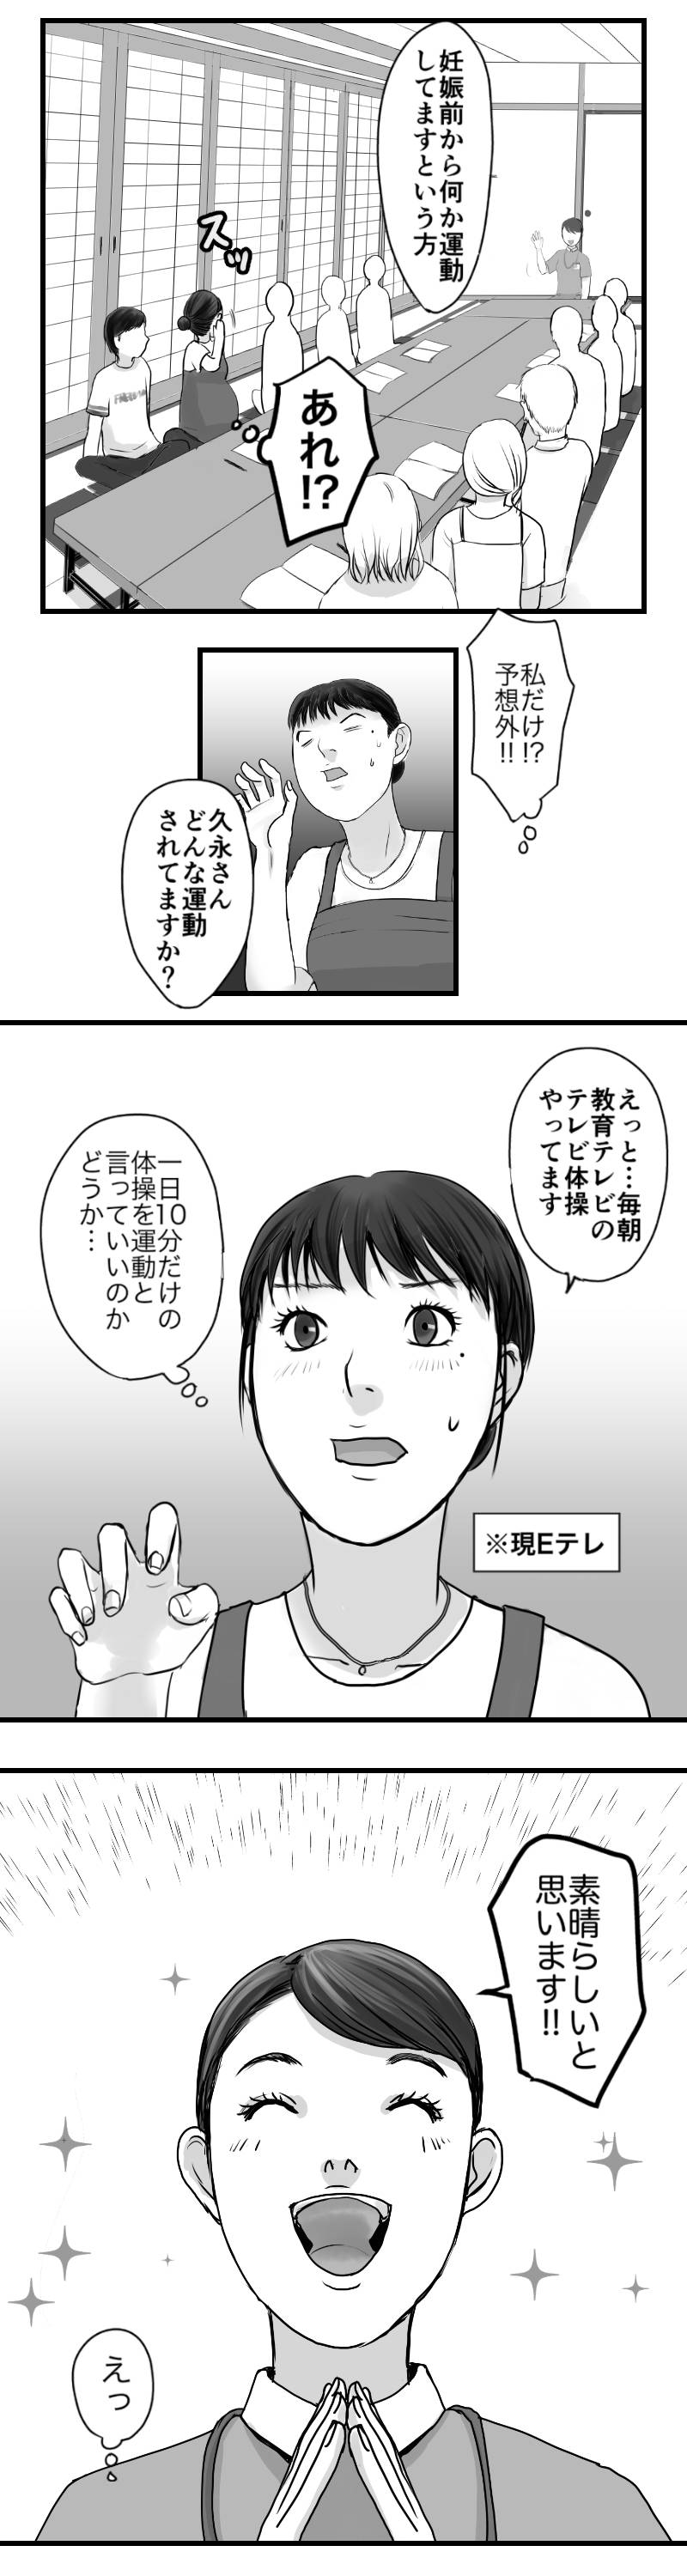 久永家〜妊娠出産がわかるエッセイ漫画〜 第27話